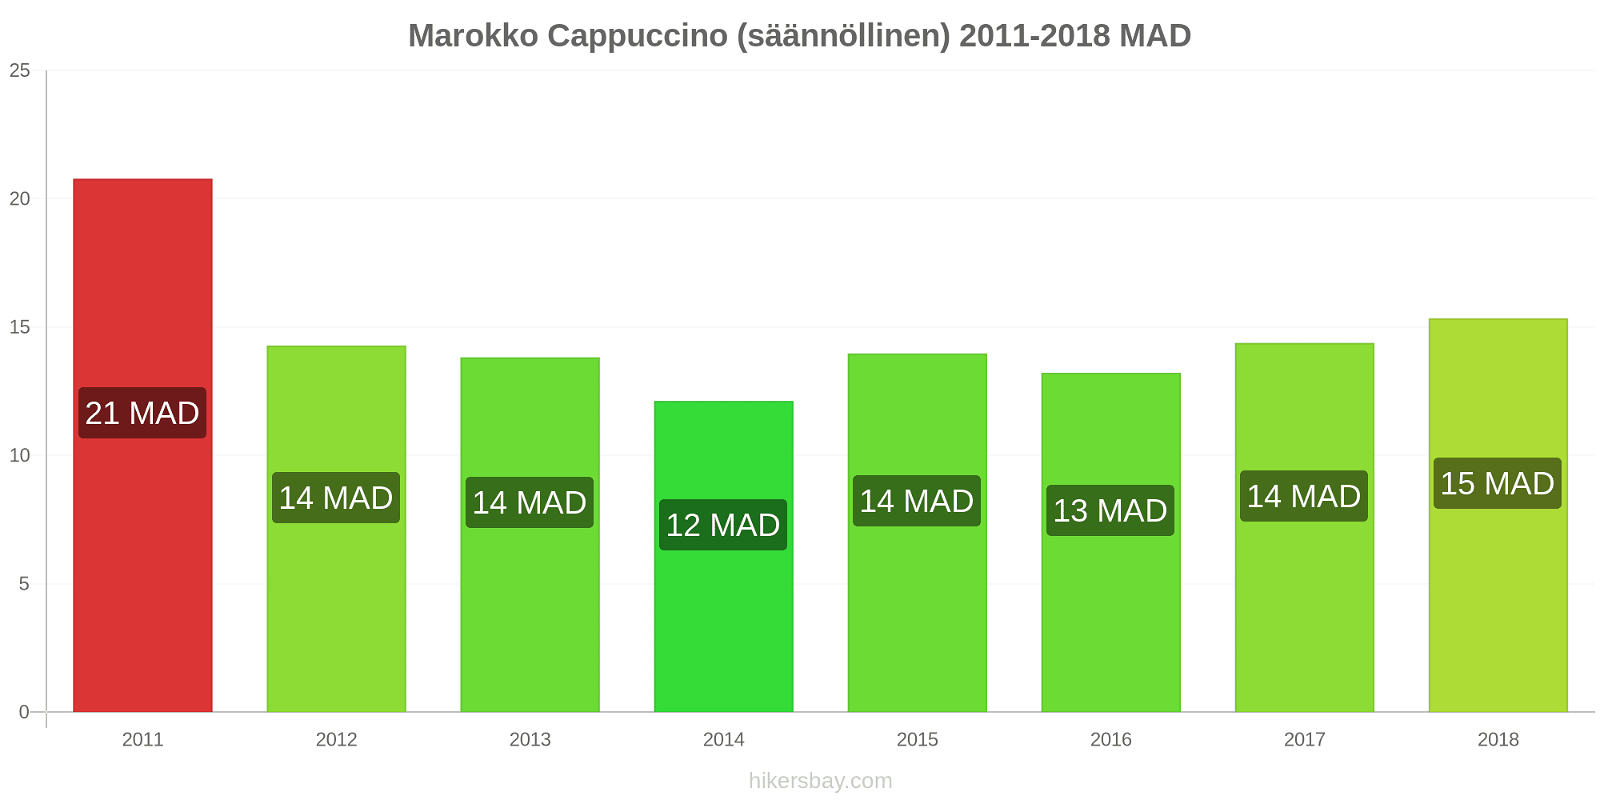 Marokko hintojen muutokset Cappuccino (säännöllinen) hikersbay.com